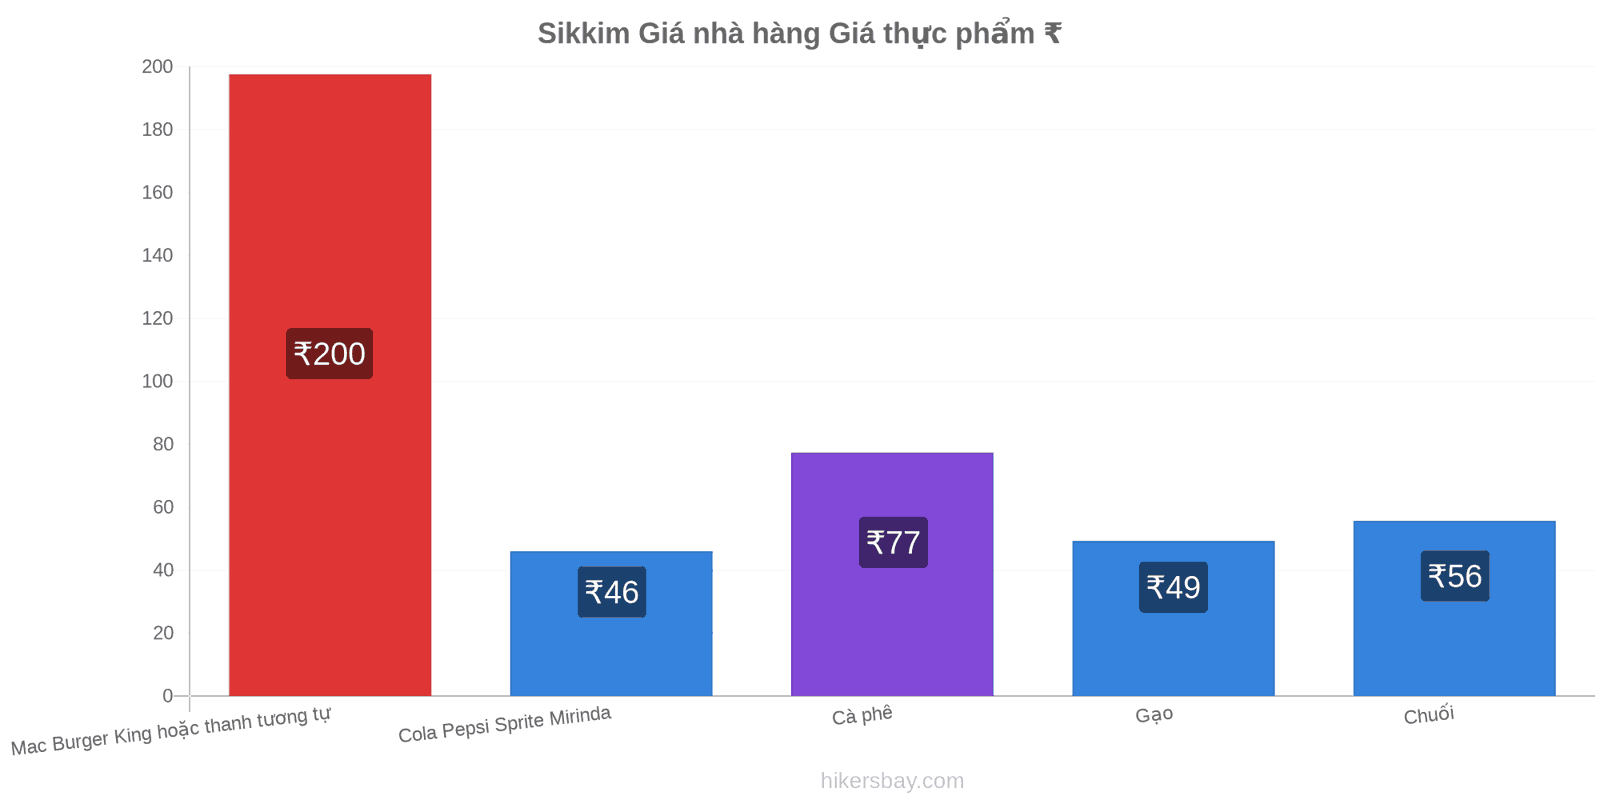 Sikkim thay đổi giá cả hikersbay.com